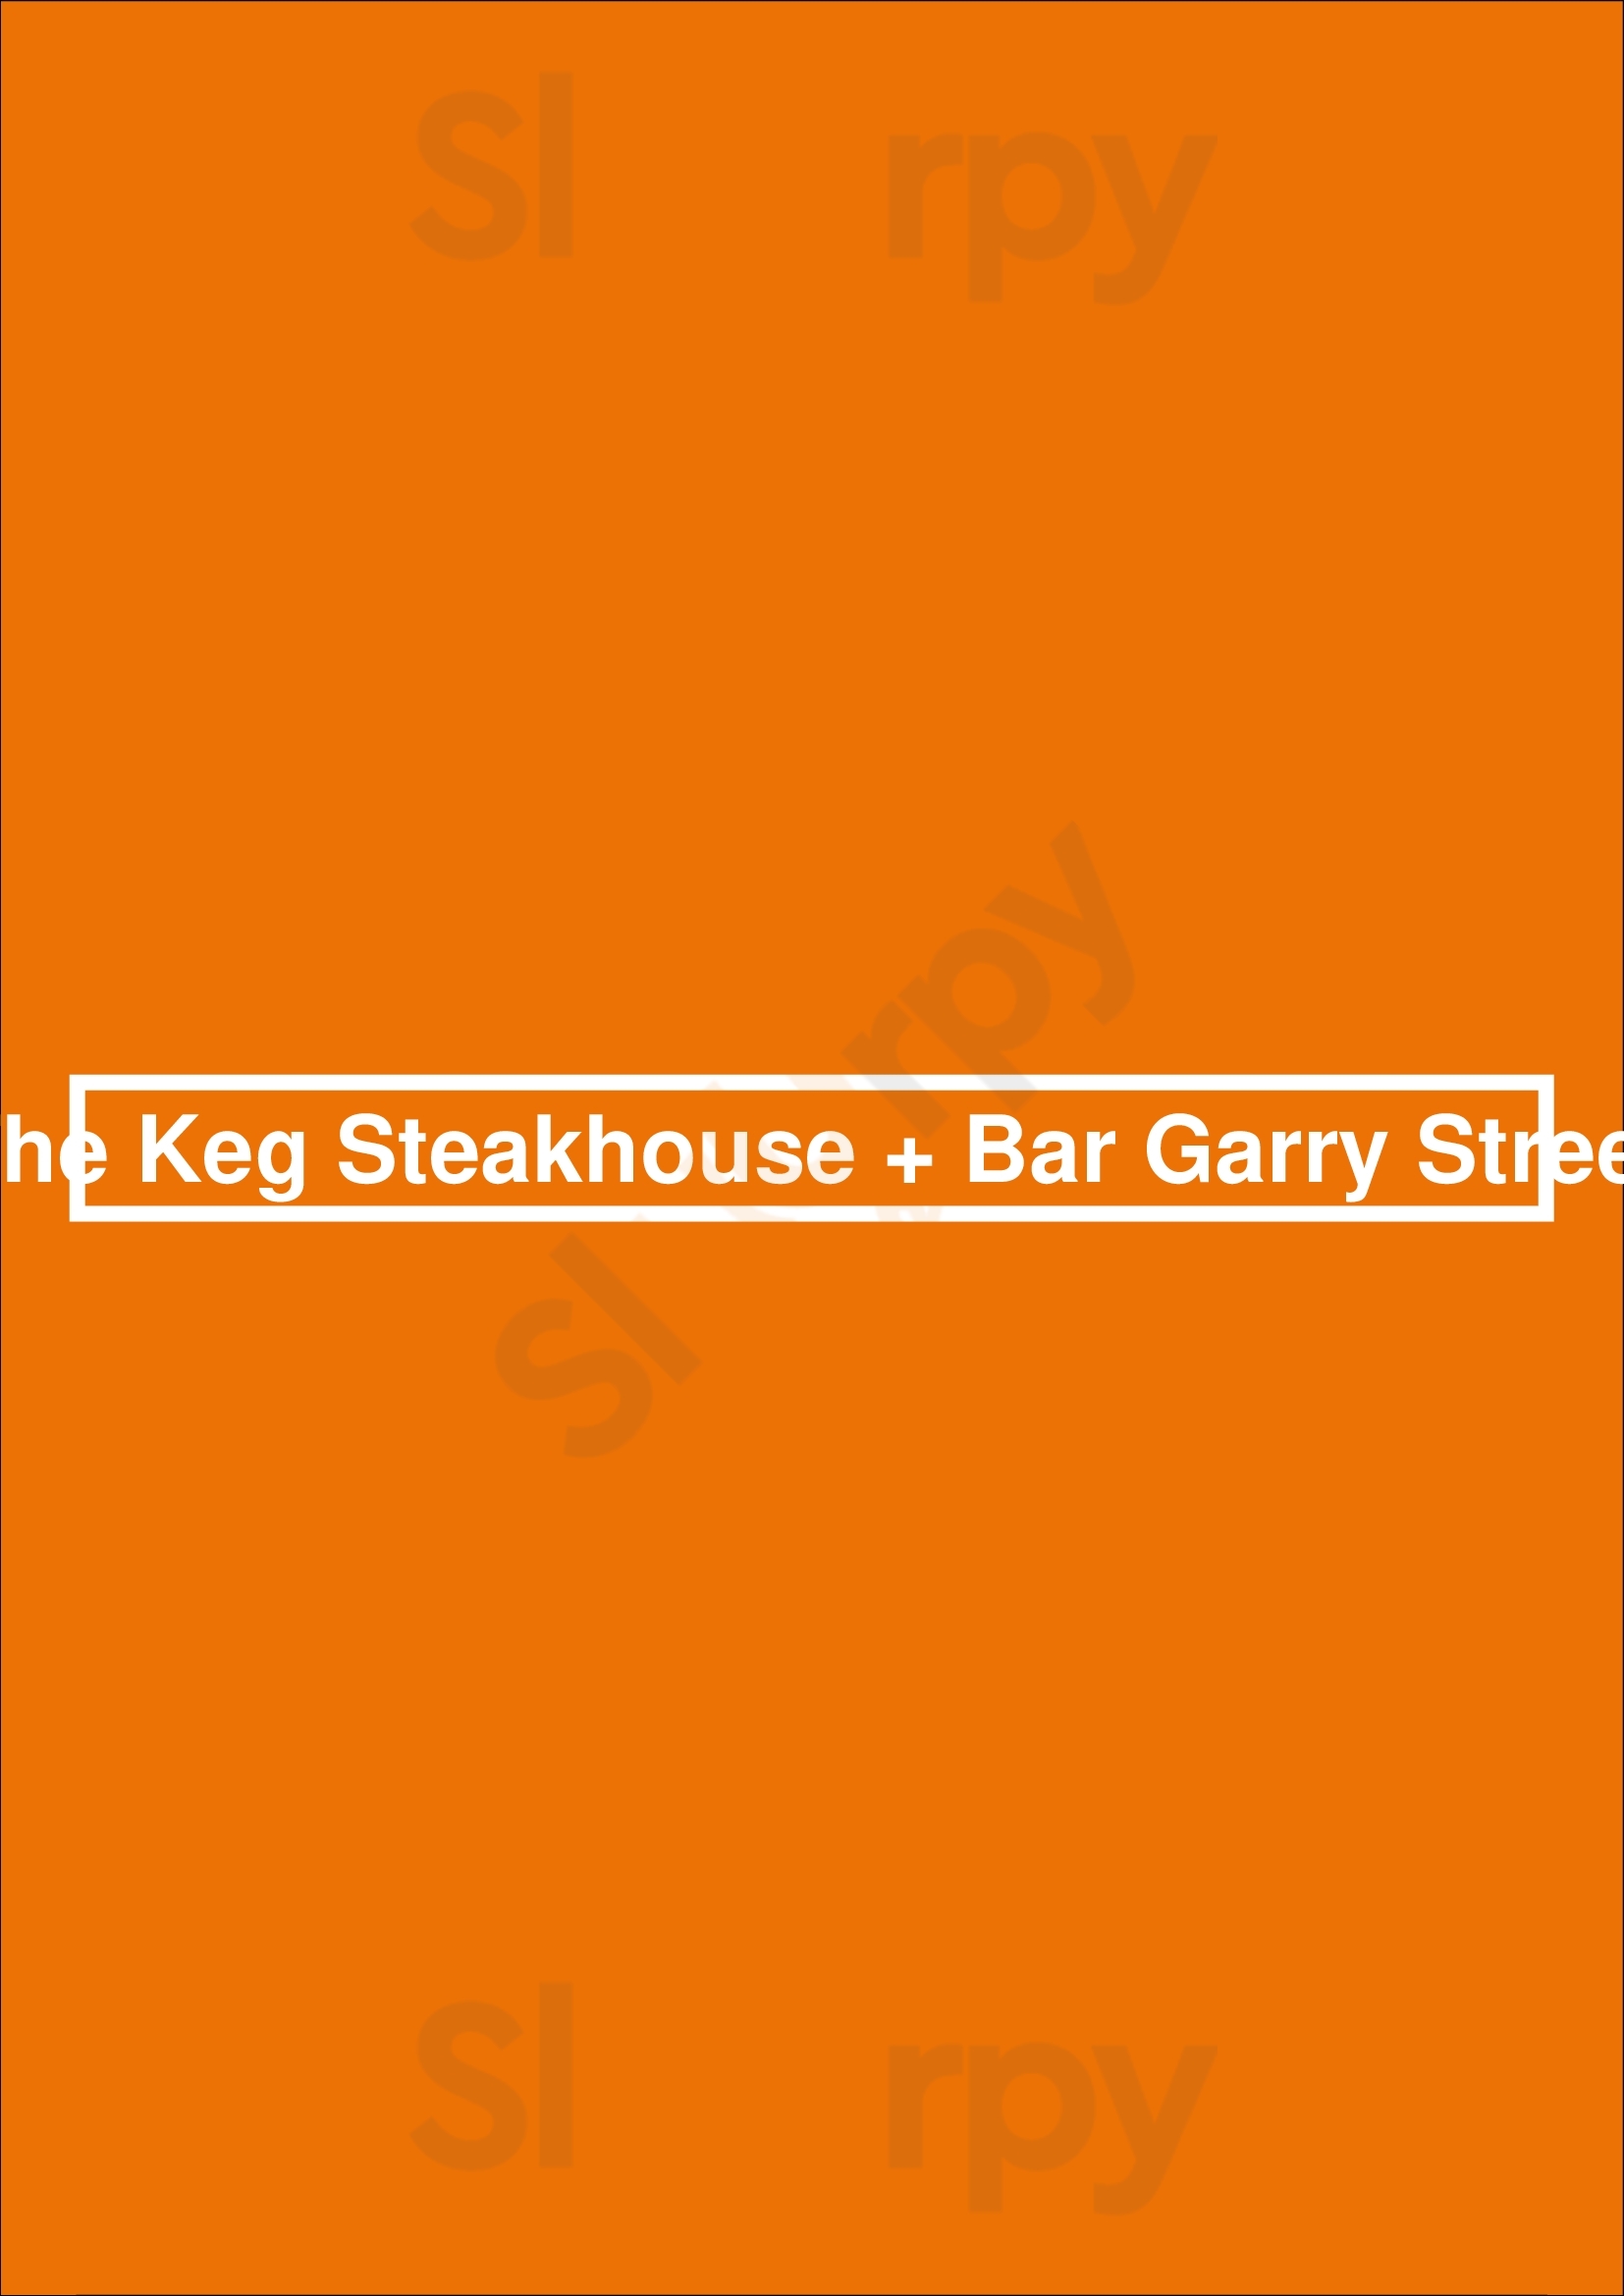 The Keg Steakhouse + Bar - Garry Street Winnipeg Menu - 1